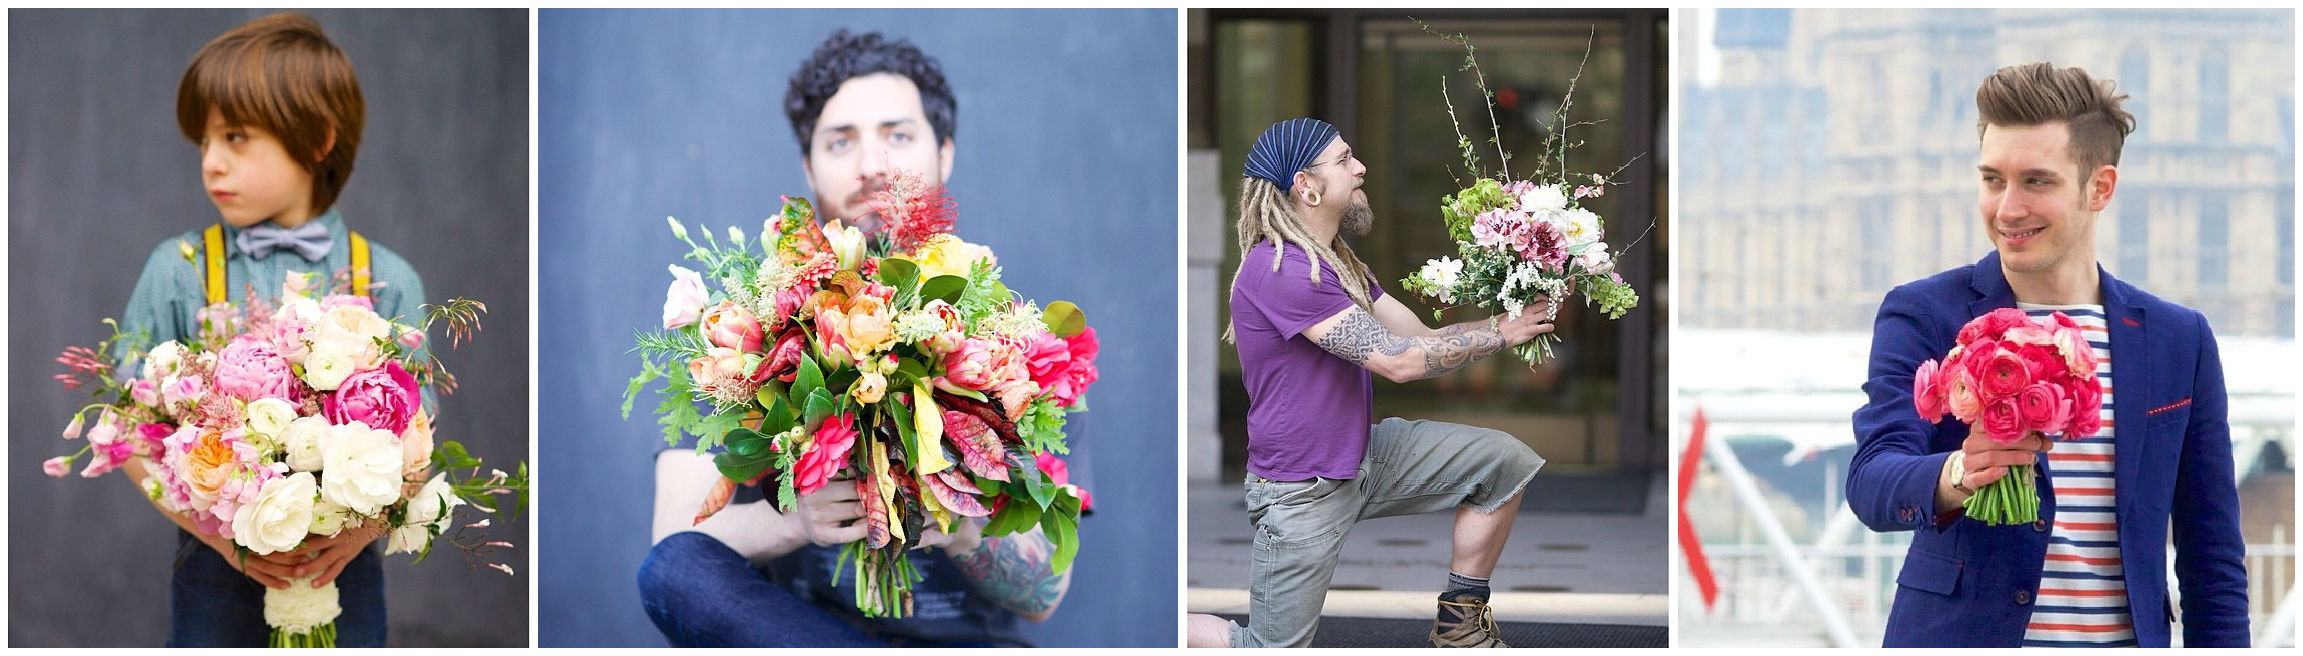 Где в москве дарят цветы. Мужчина с цветами. Парень с букетом. Вручение цветов мужчине. Вручение букета.